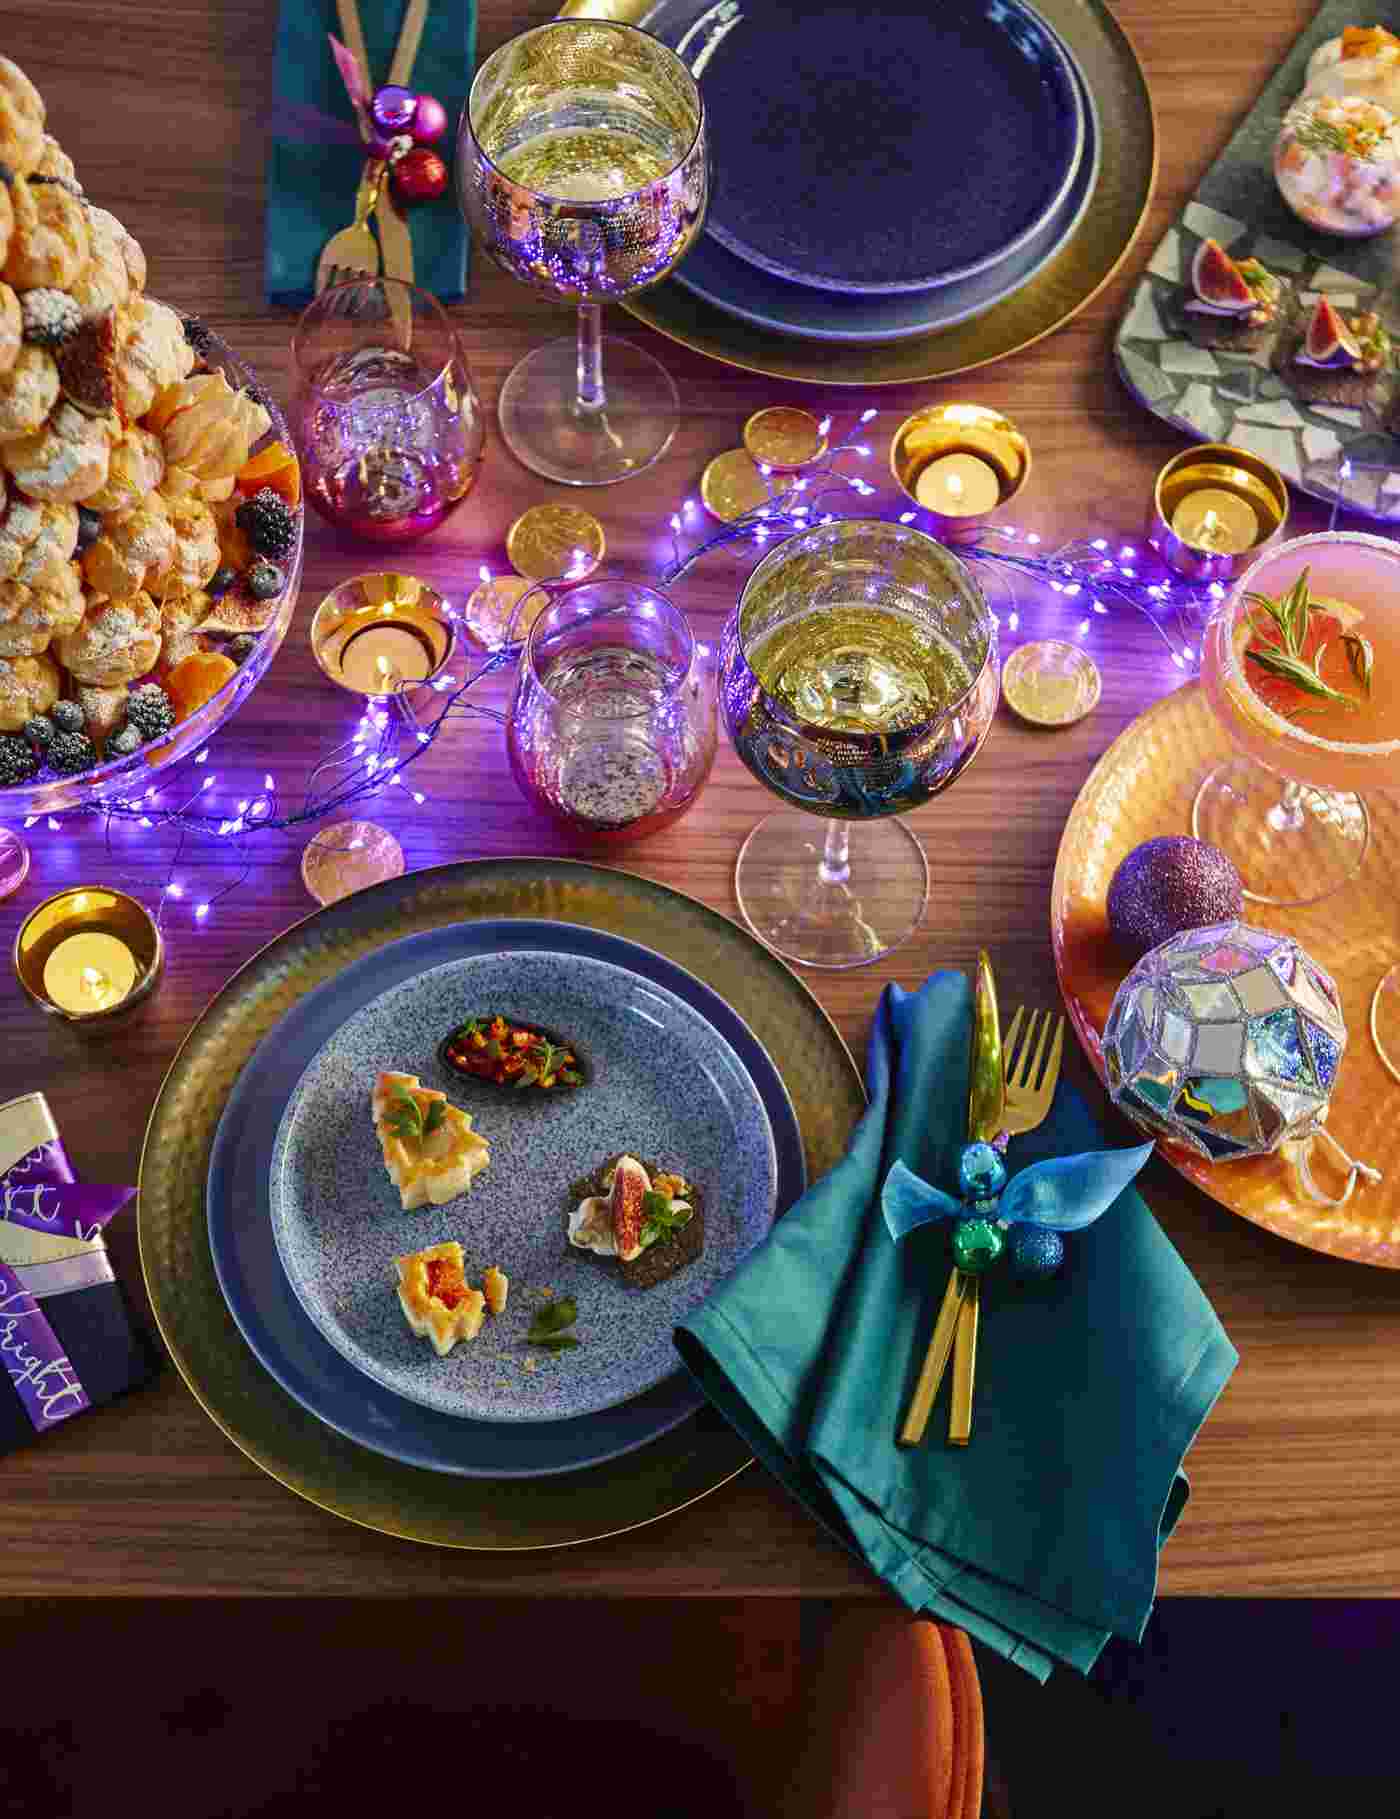 Farbtrends Weihnachten 2019 lila LED Lichterketten und dunkelblaue Servietteen und Gold Besteck